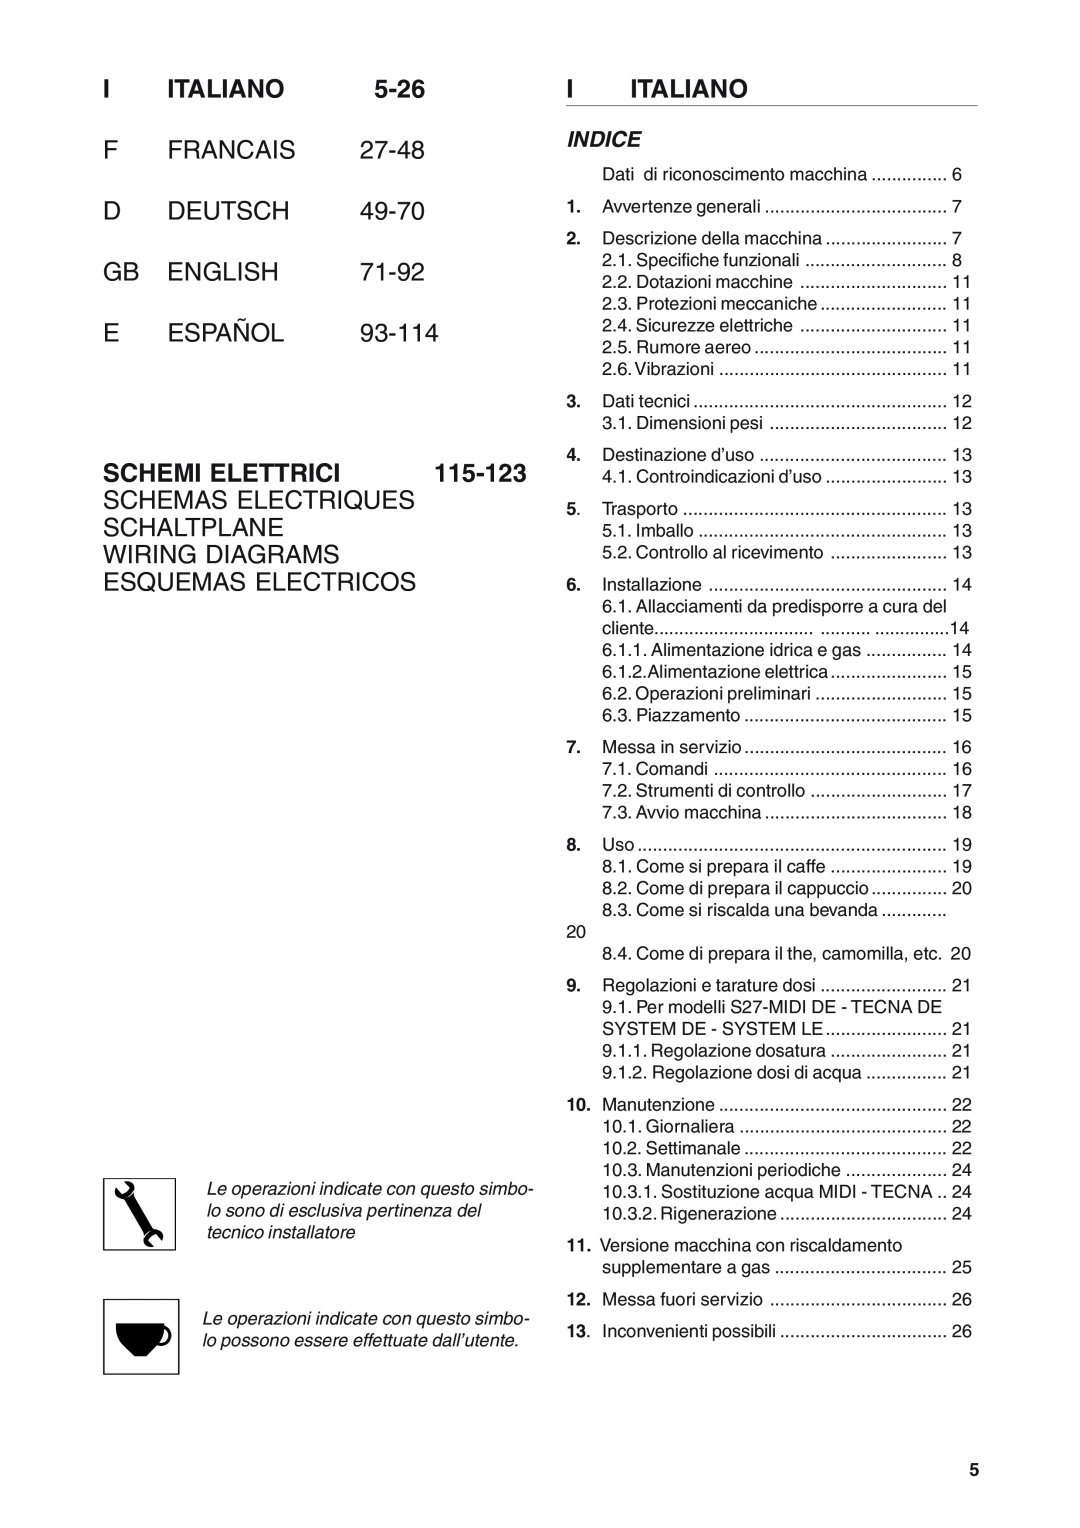 Rancilio S20 manual I Italiano, F Francais D Deutsch, Gb English, 71-92, E Español, Schemi Elettrici, 115-123, Indice 